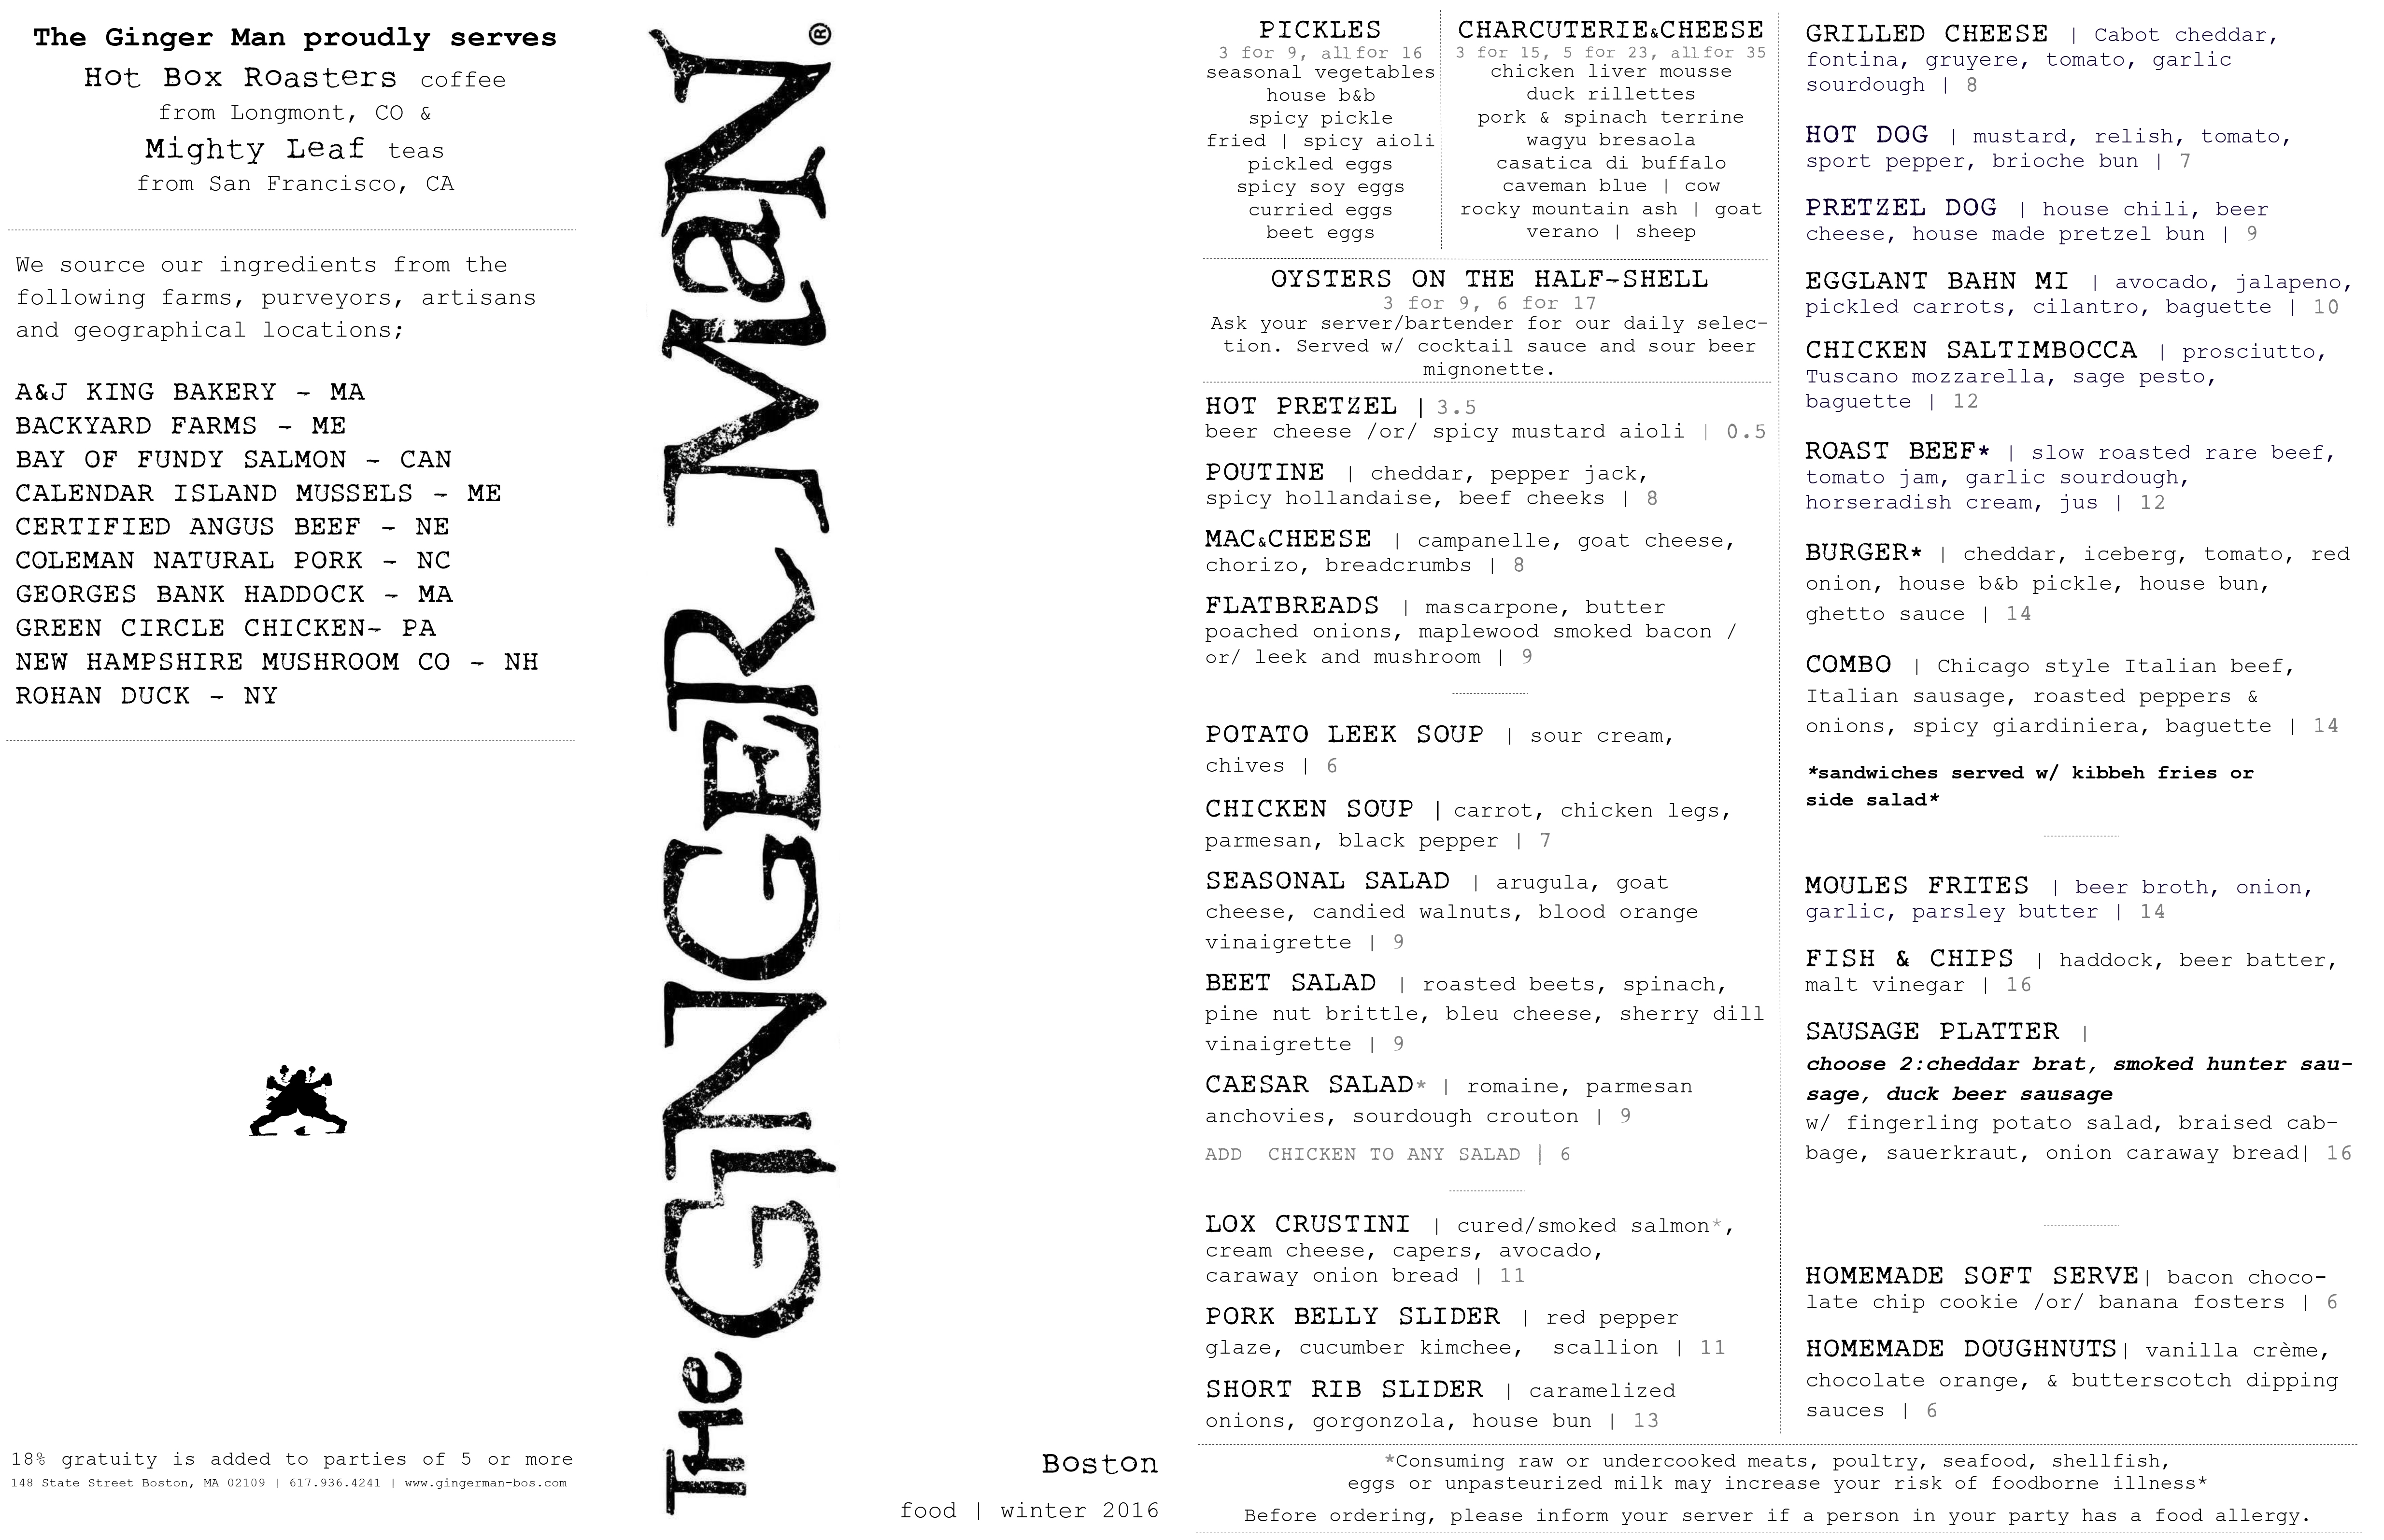 The Ginger Man Boston menu